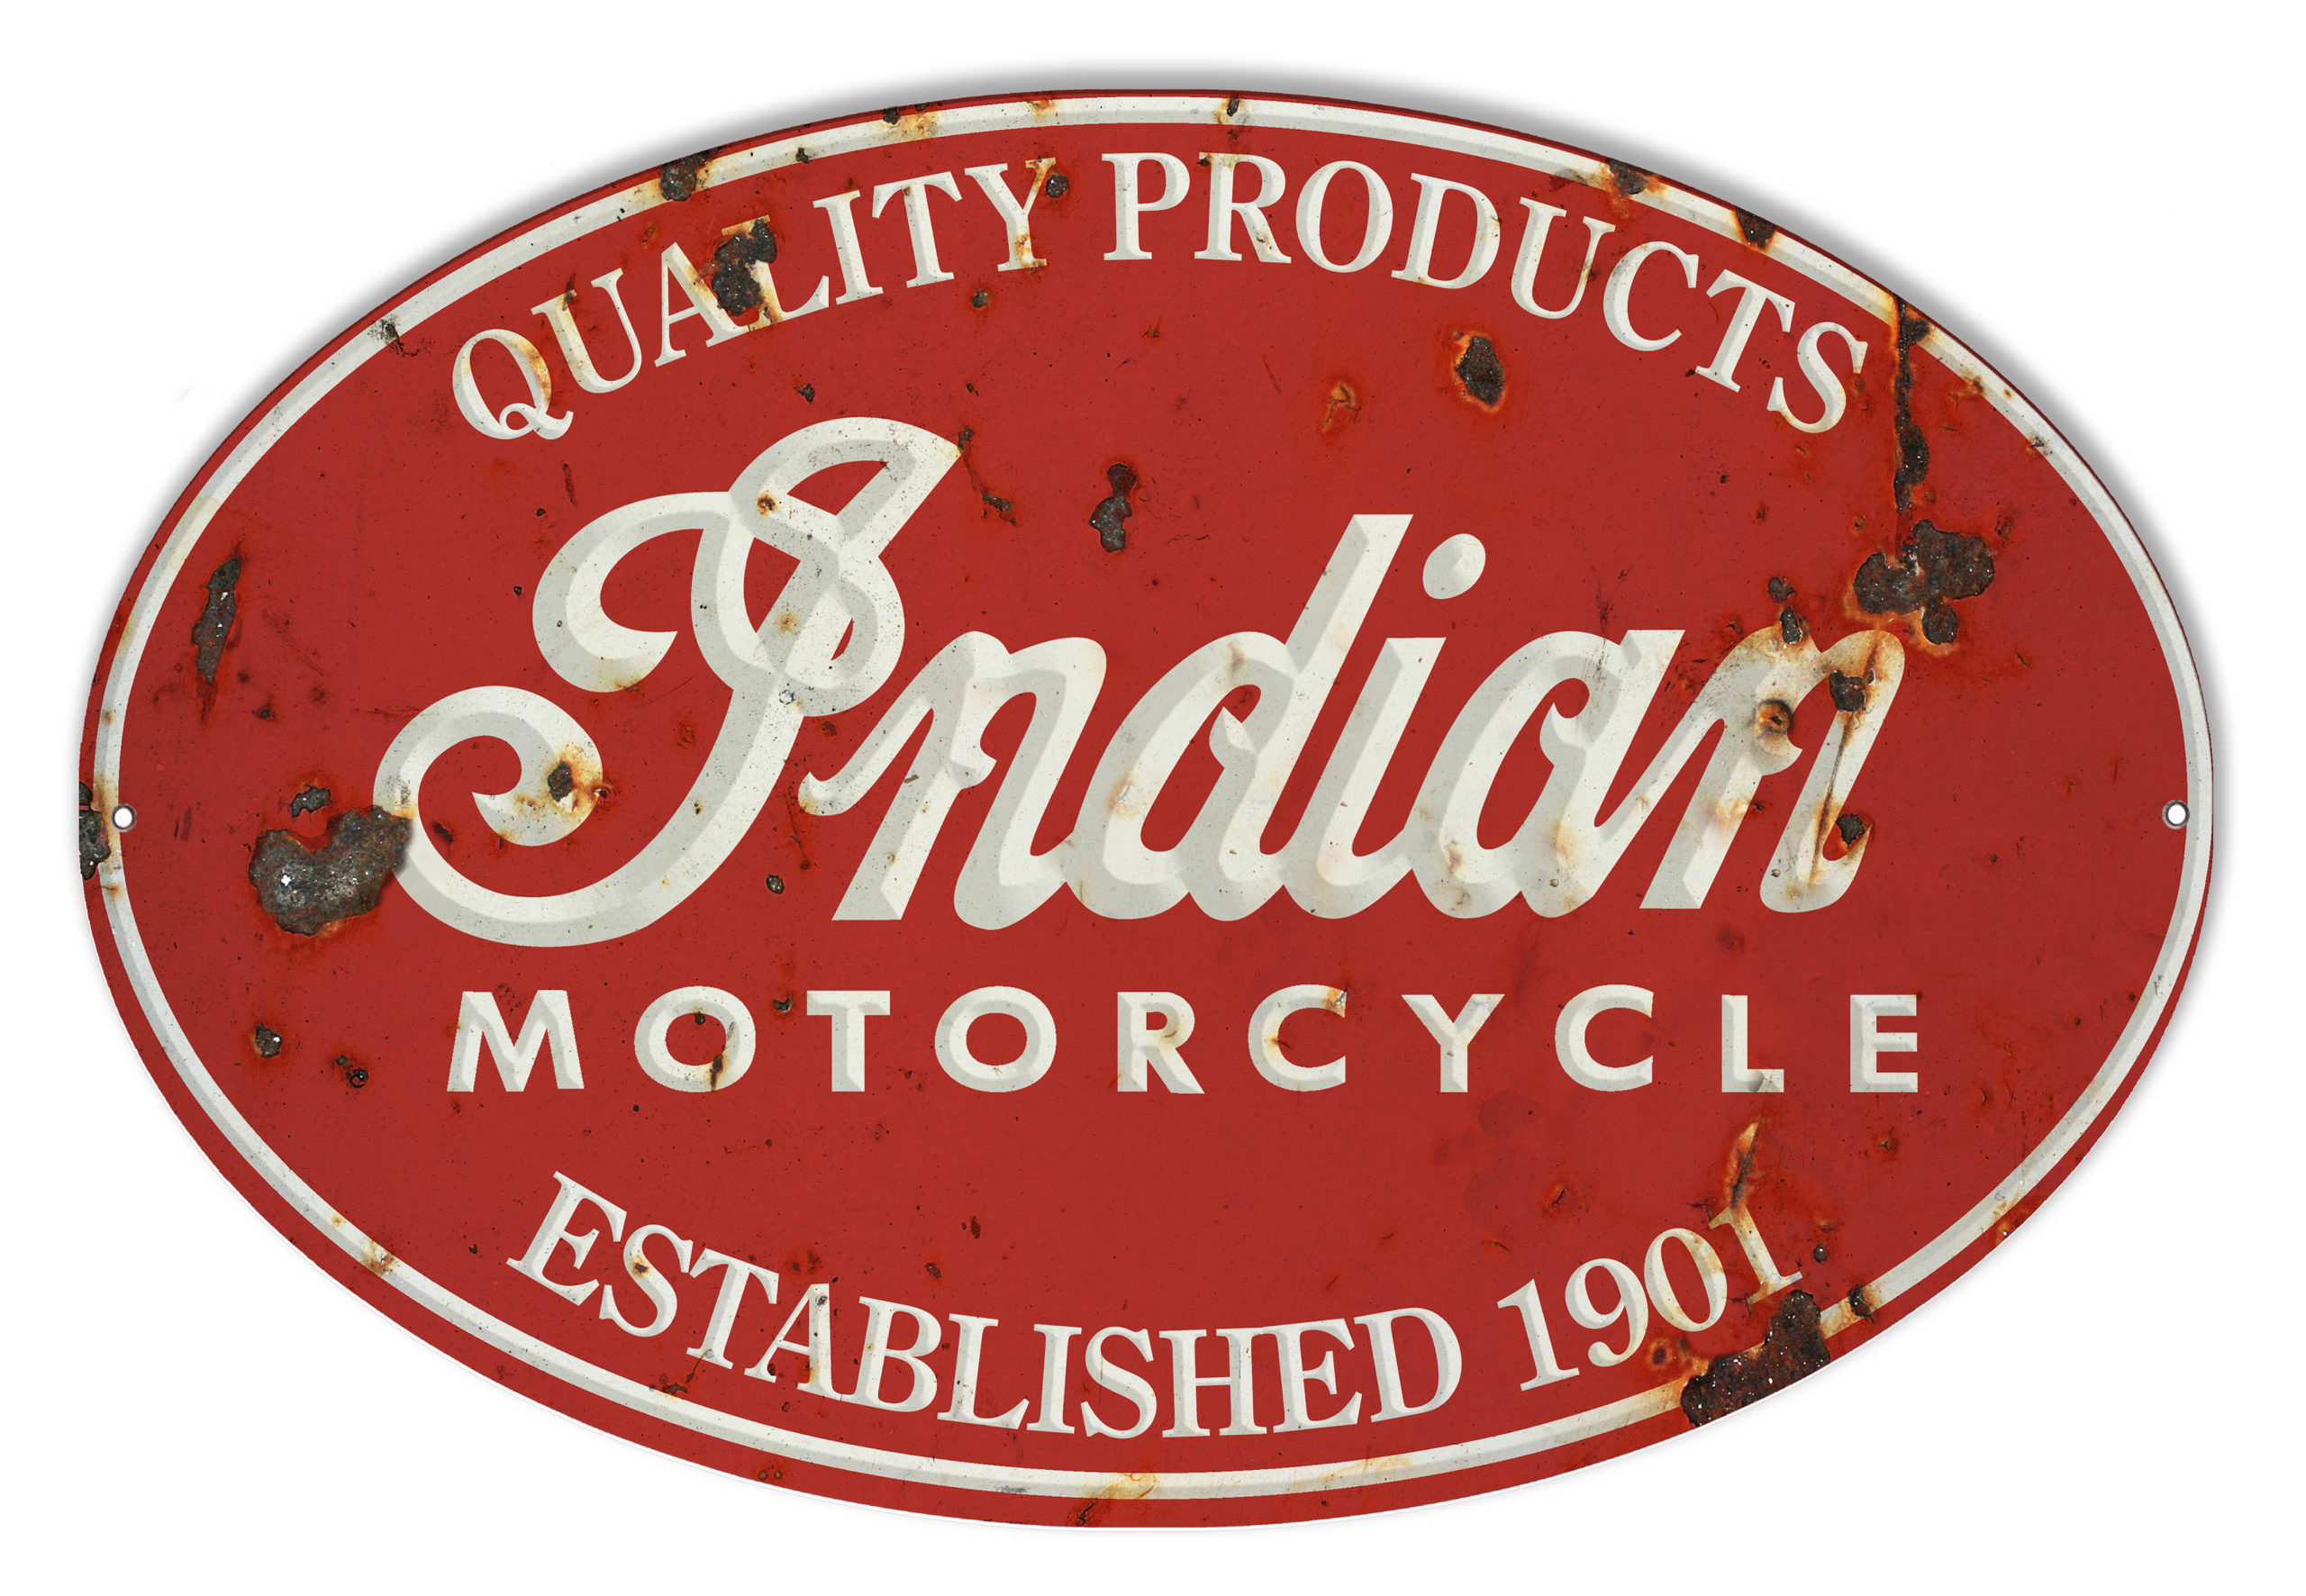 Indian Motorcycle 1901 Series Garage Art Metal Sign 30"x30" Round RVG879-30 